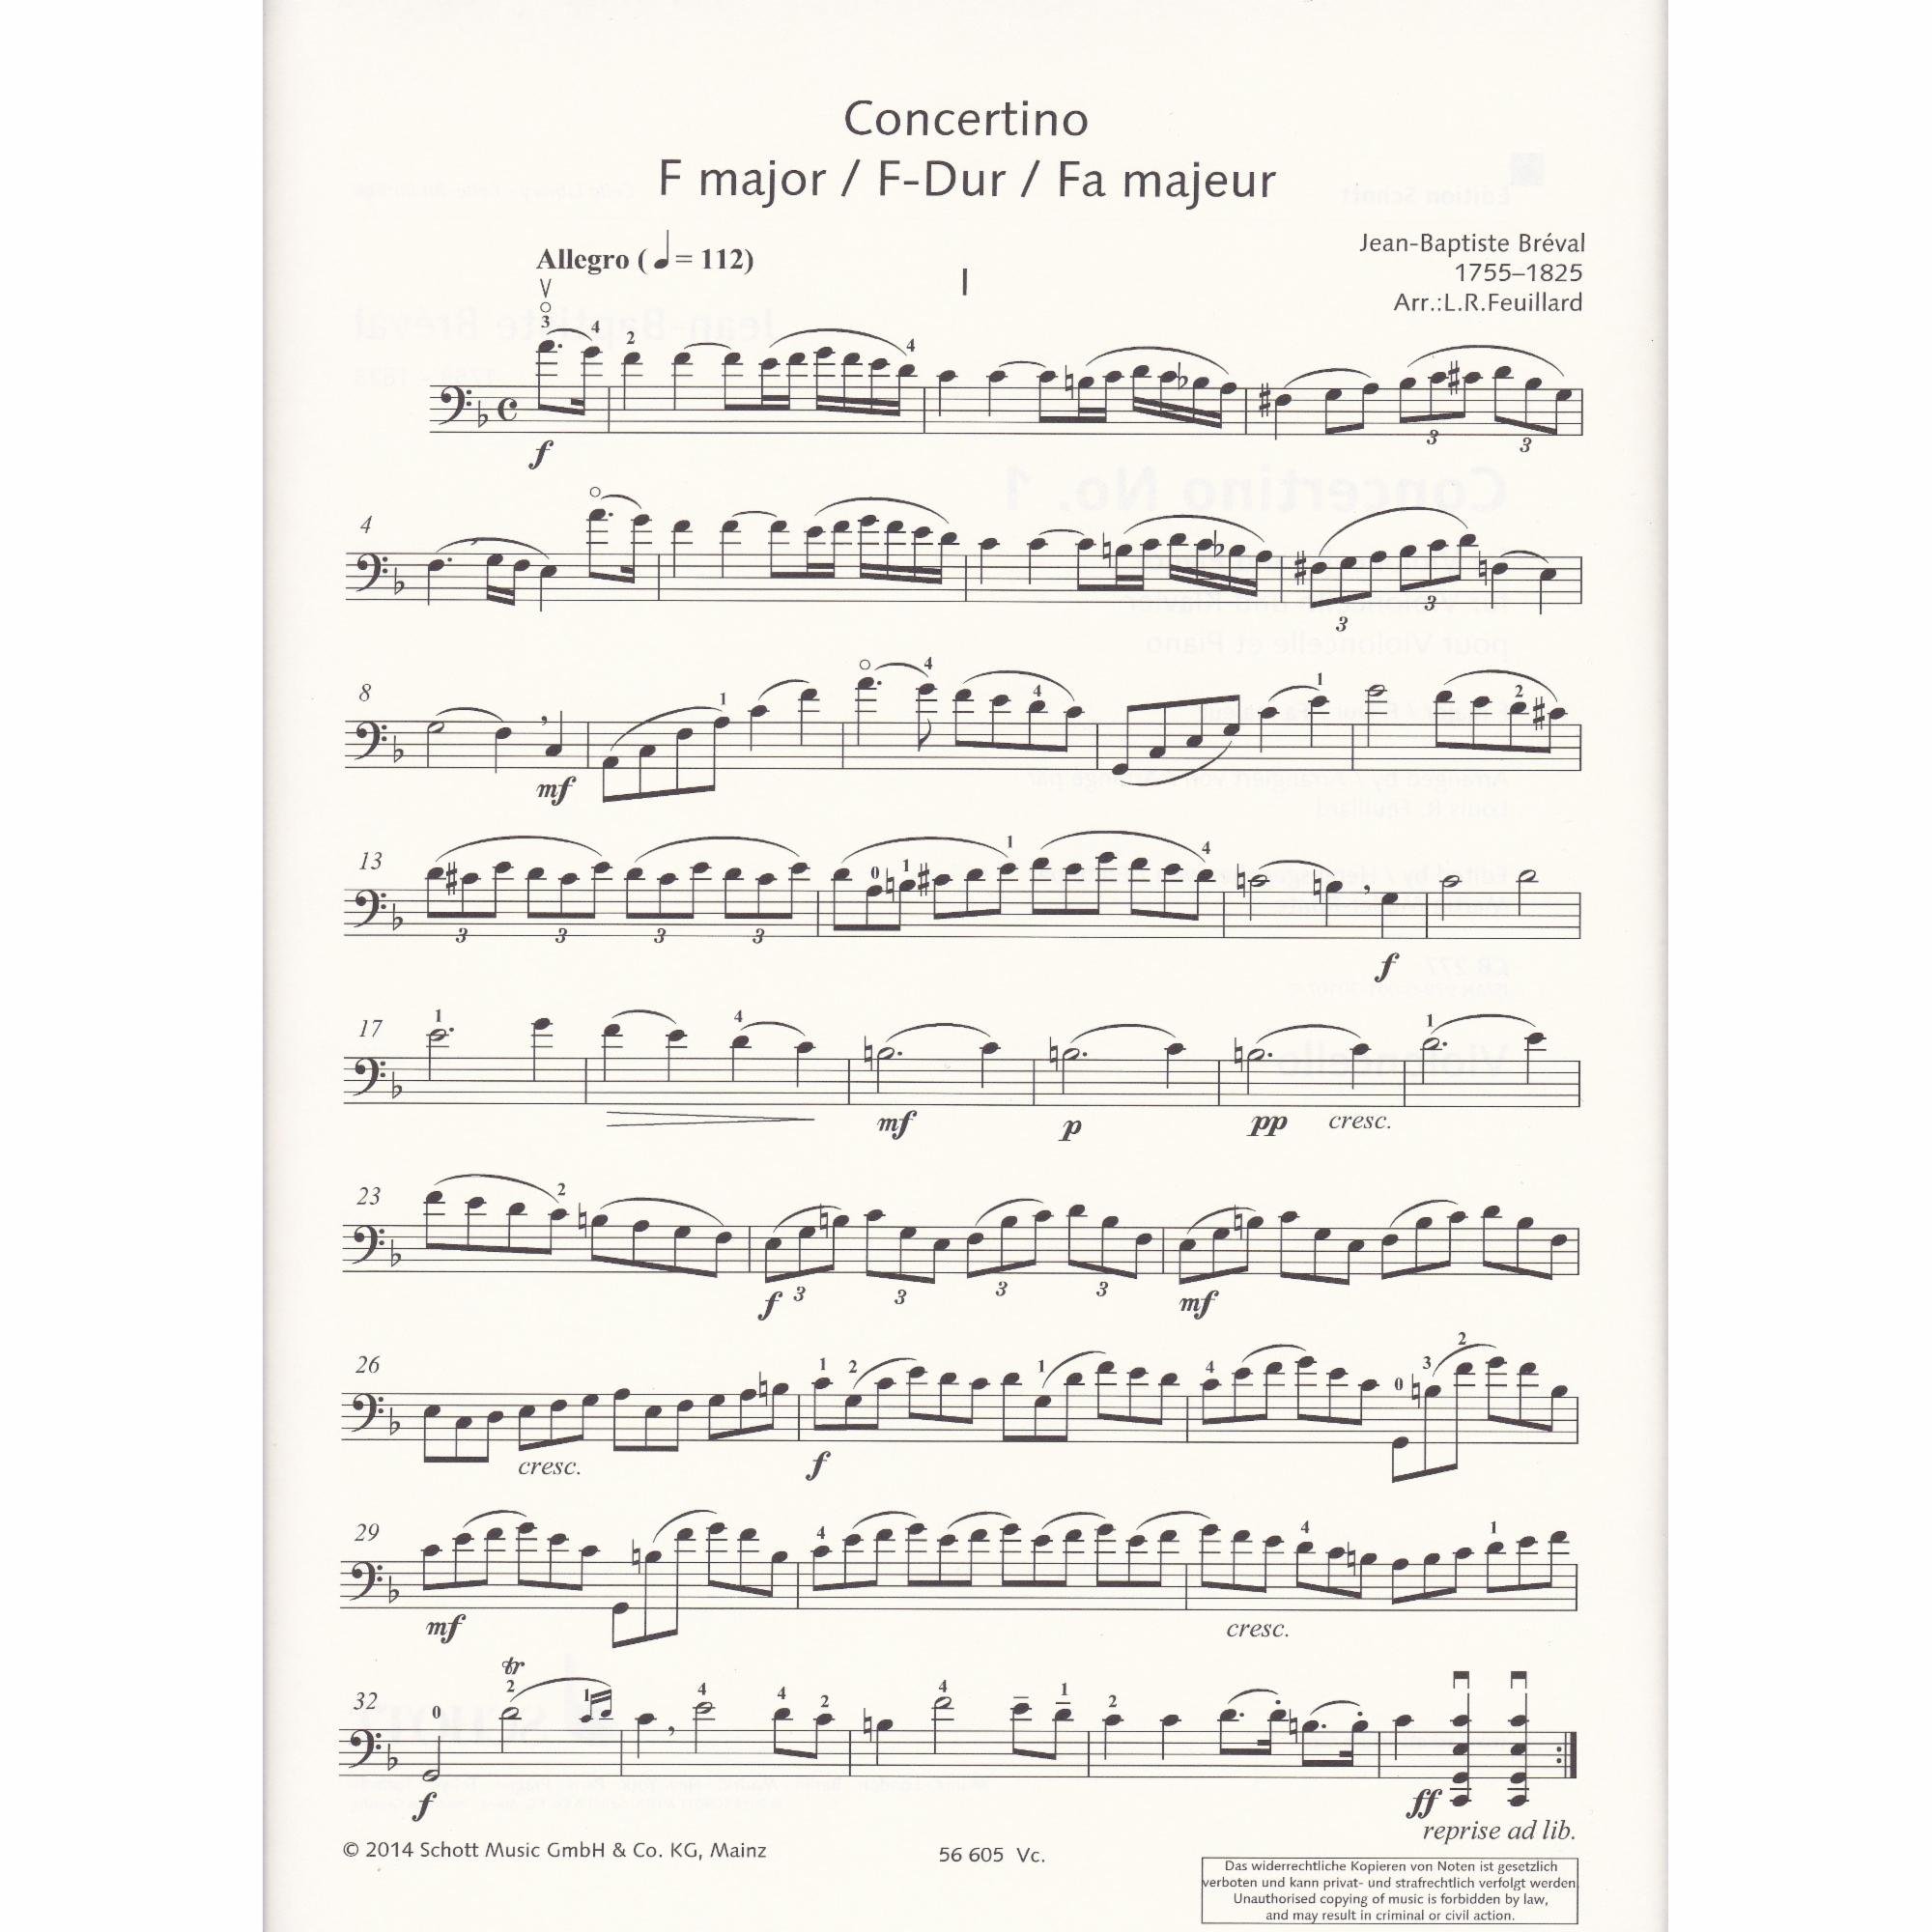 Concertino No. 1 in F Major for Cello and Piano